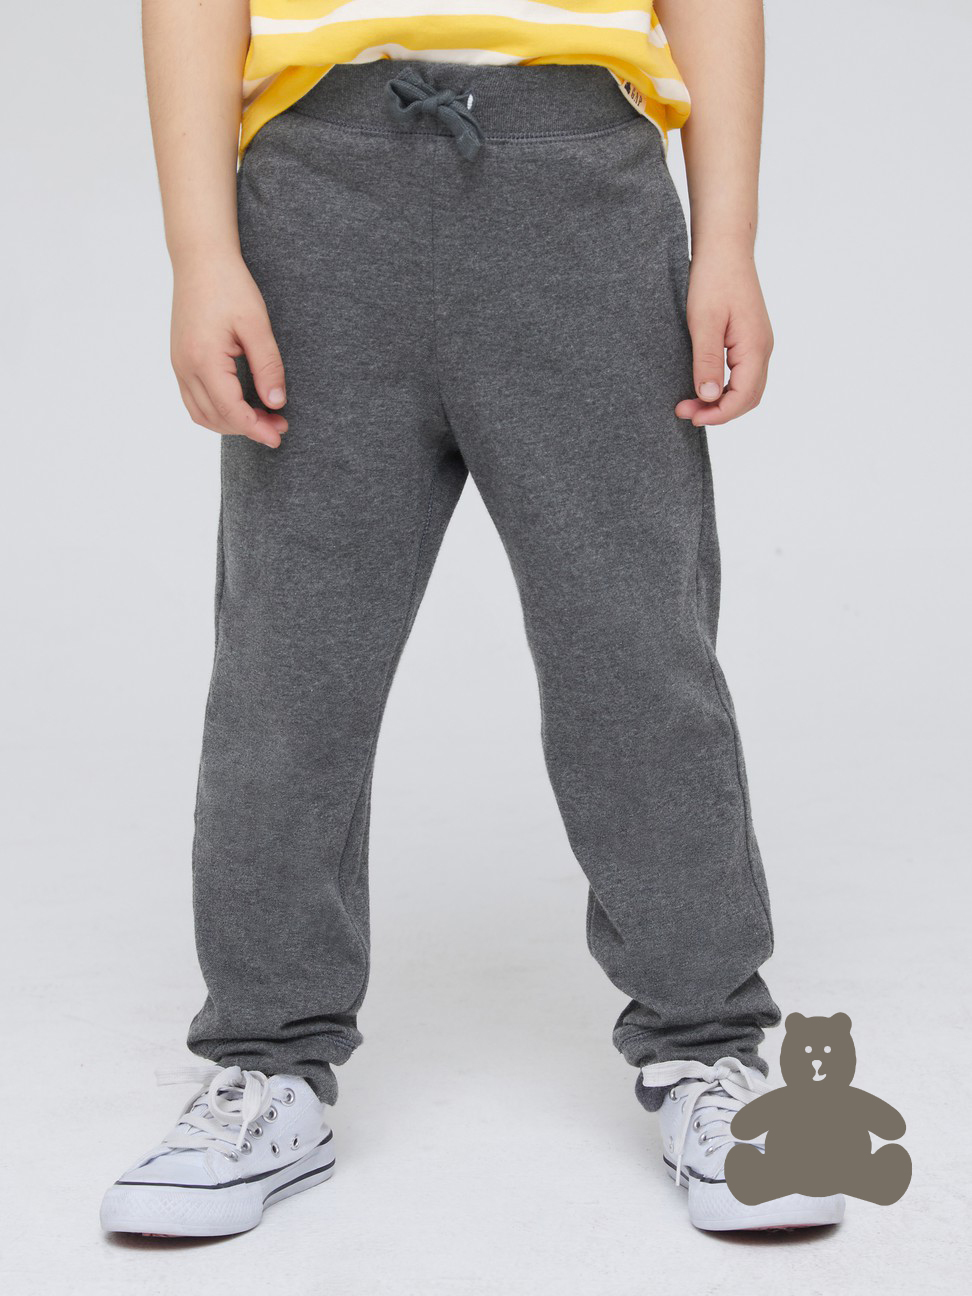 男幼童|布萊納系列 純棉基本款運動休閒褲